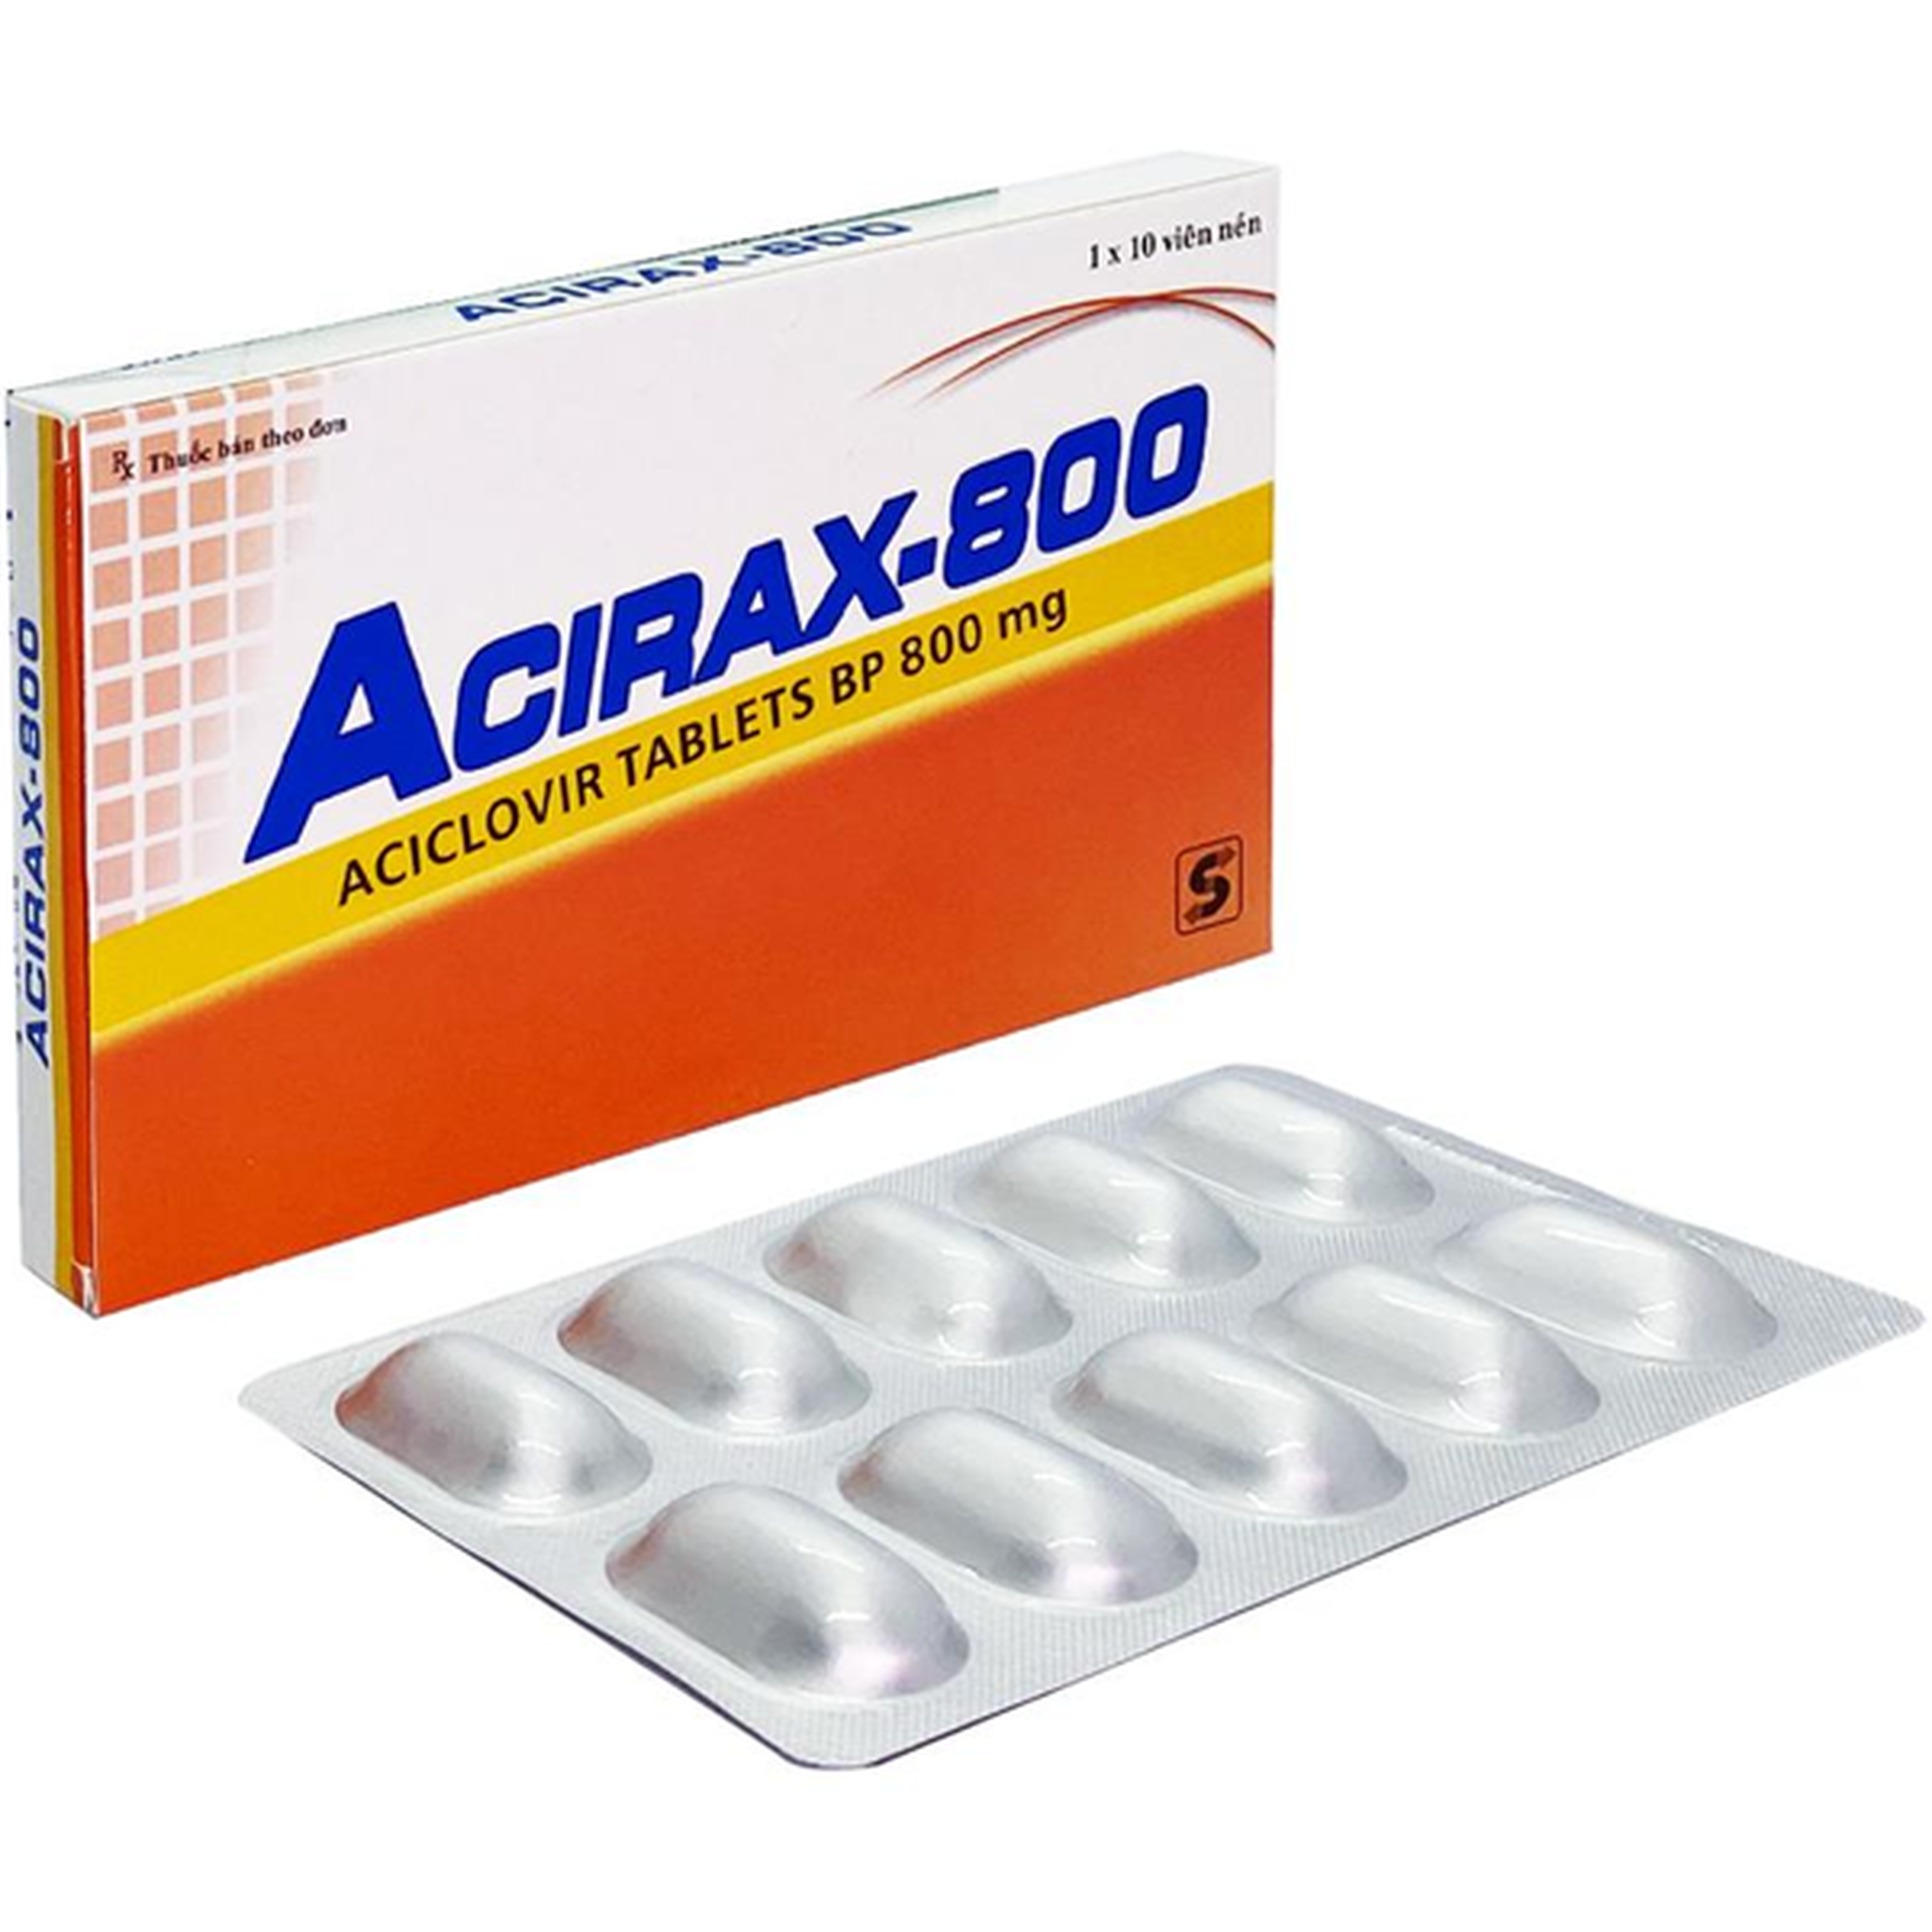 Thuốc Acirax-800 Synmedic điều trị nhiễm virus Herpes simplex, Herpes zoster (1 vỉ x 10 viên)